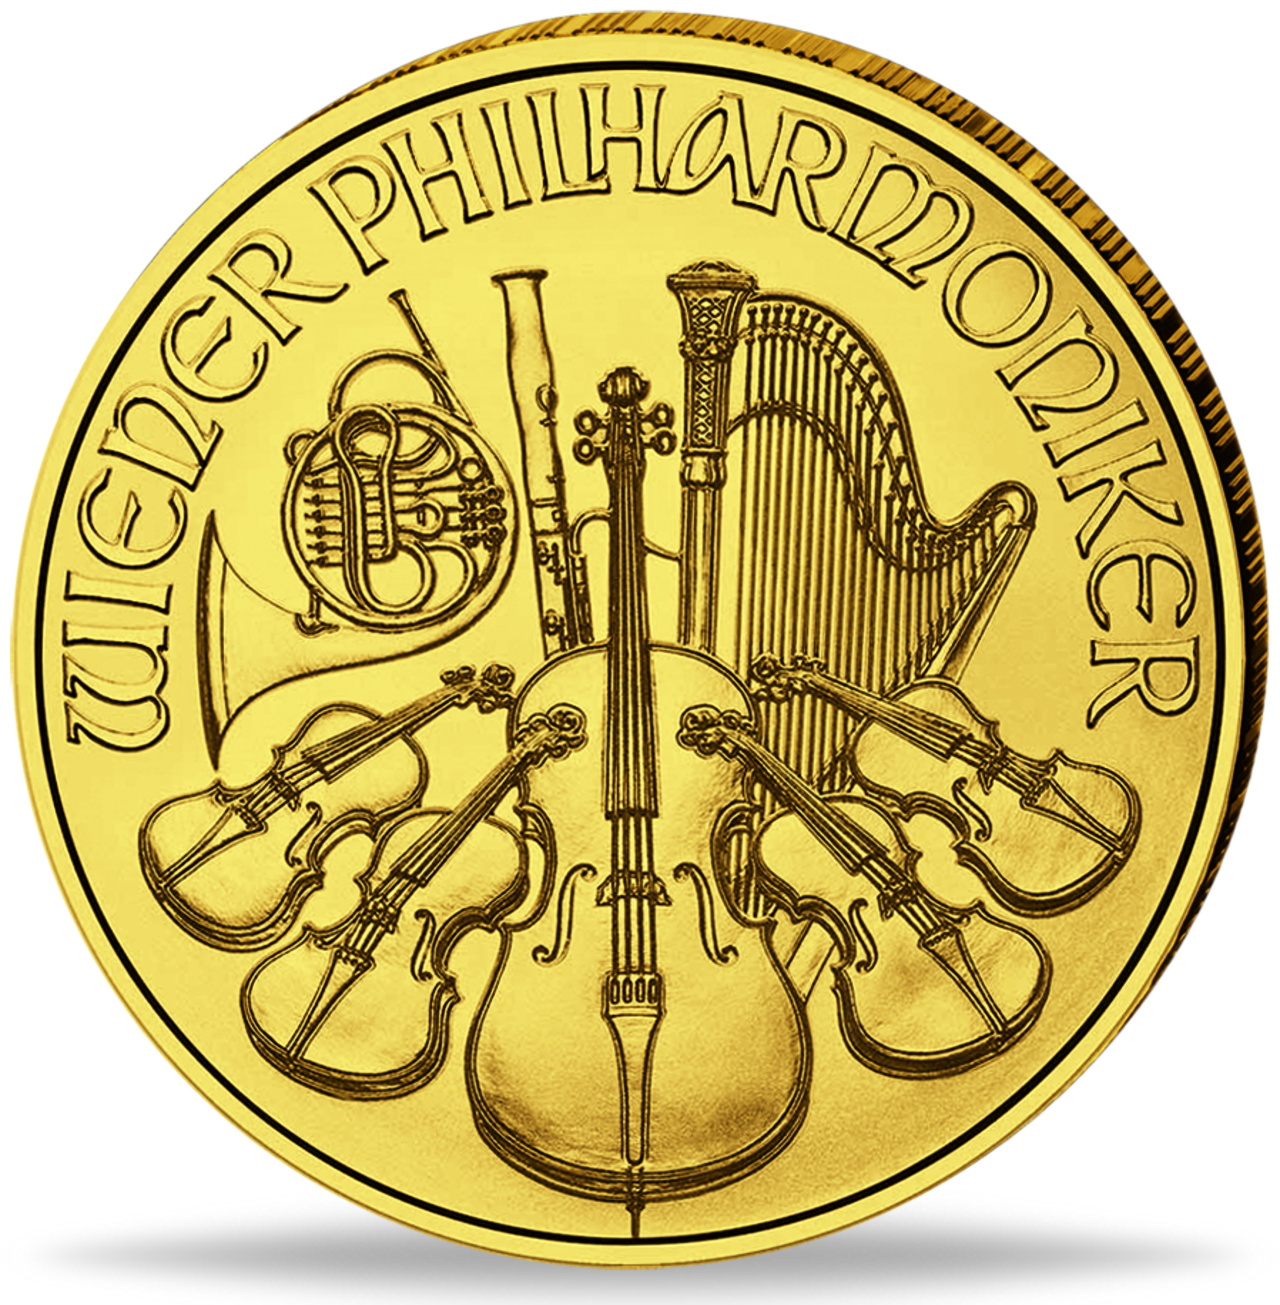 Wiener Philharmoniker Goldmünzen - Eine der beliebtesten Goldmünze Europas